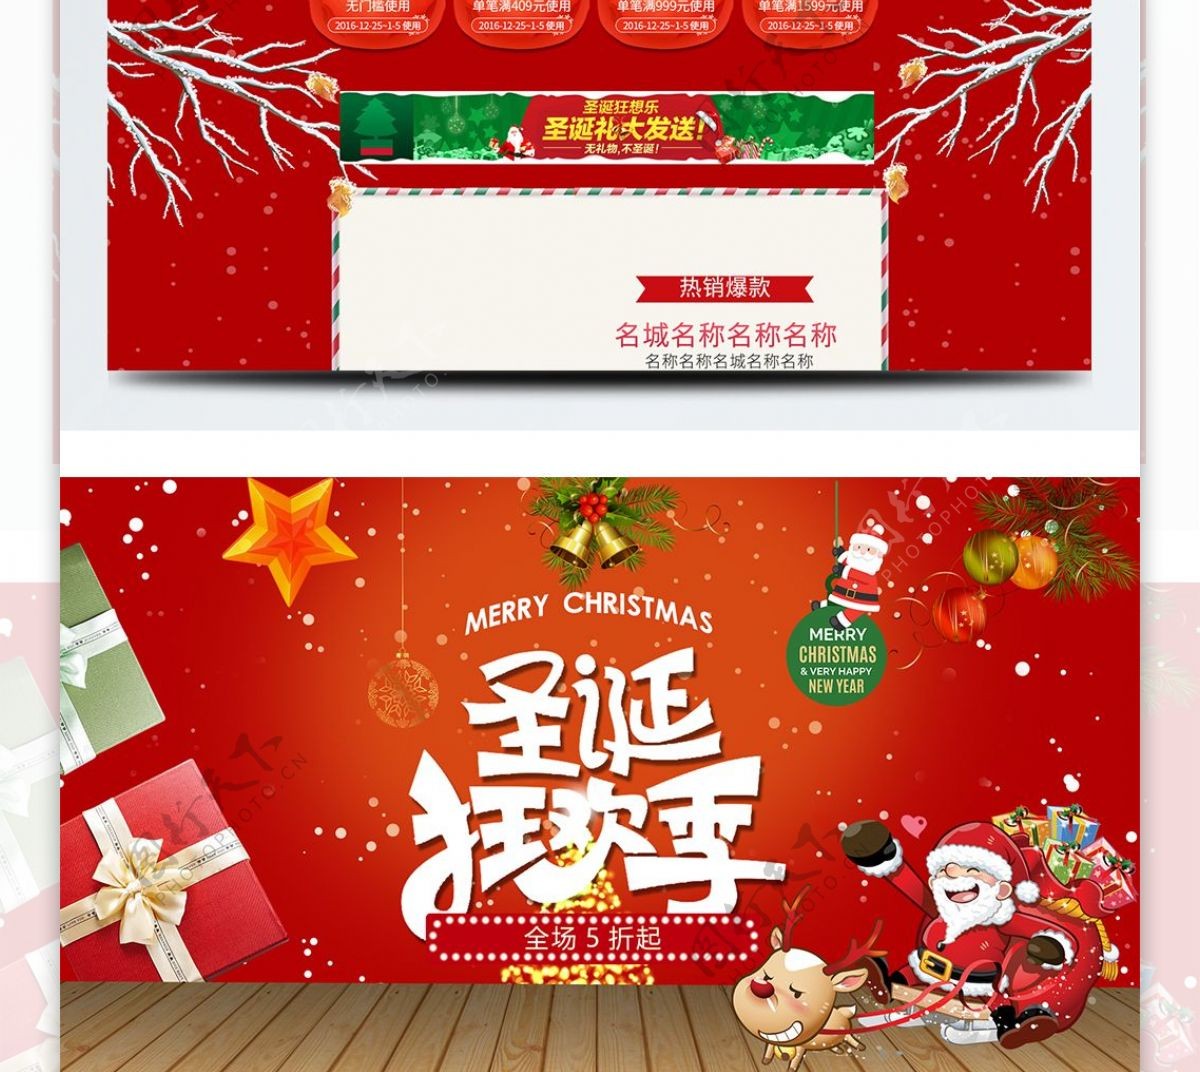 红色天猫淘宝促销圣诞节活动首页psd